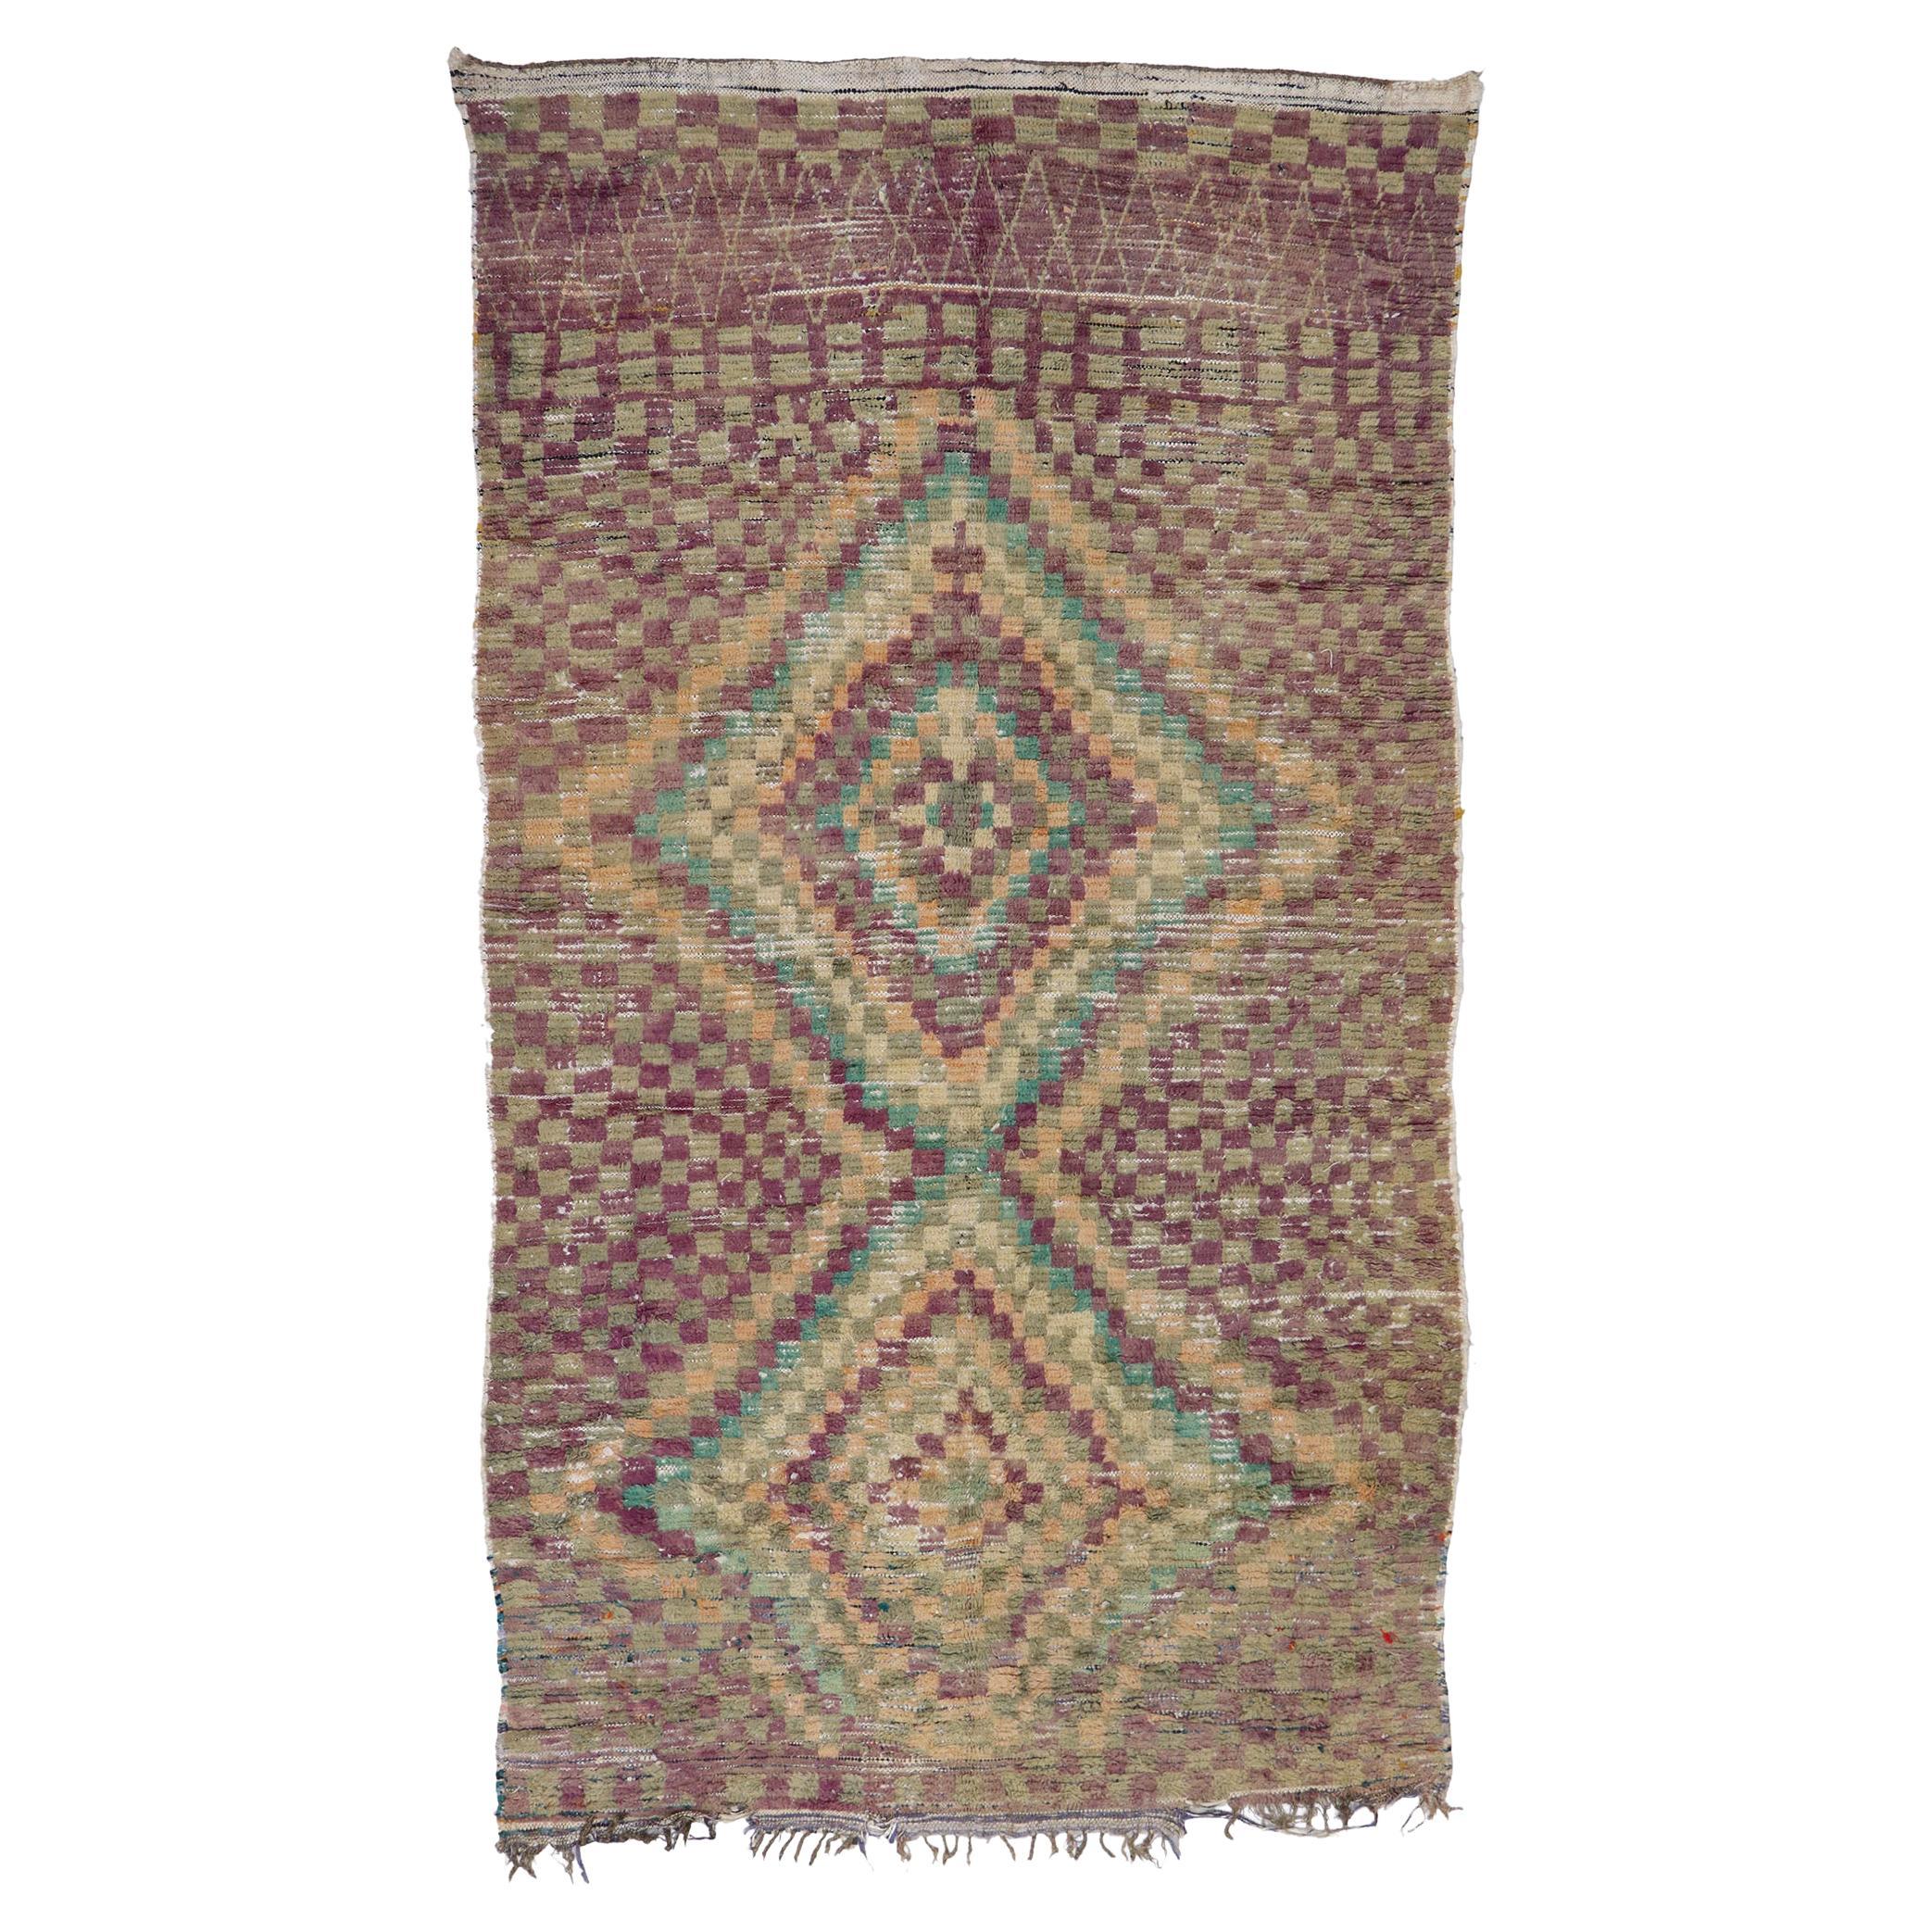 Marokkanischer Teppich im Vintage-Stil von Berberbesatz aus Marokko